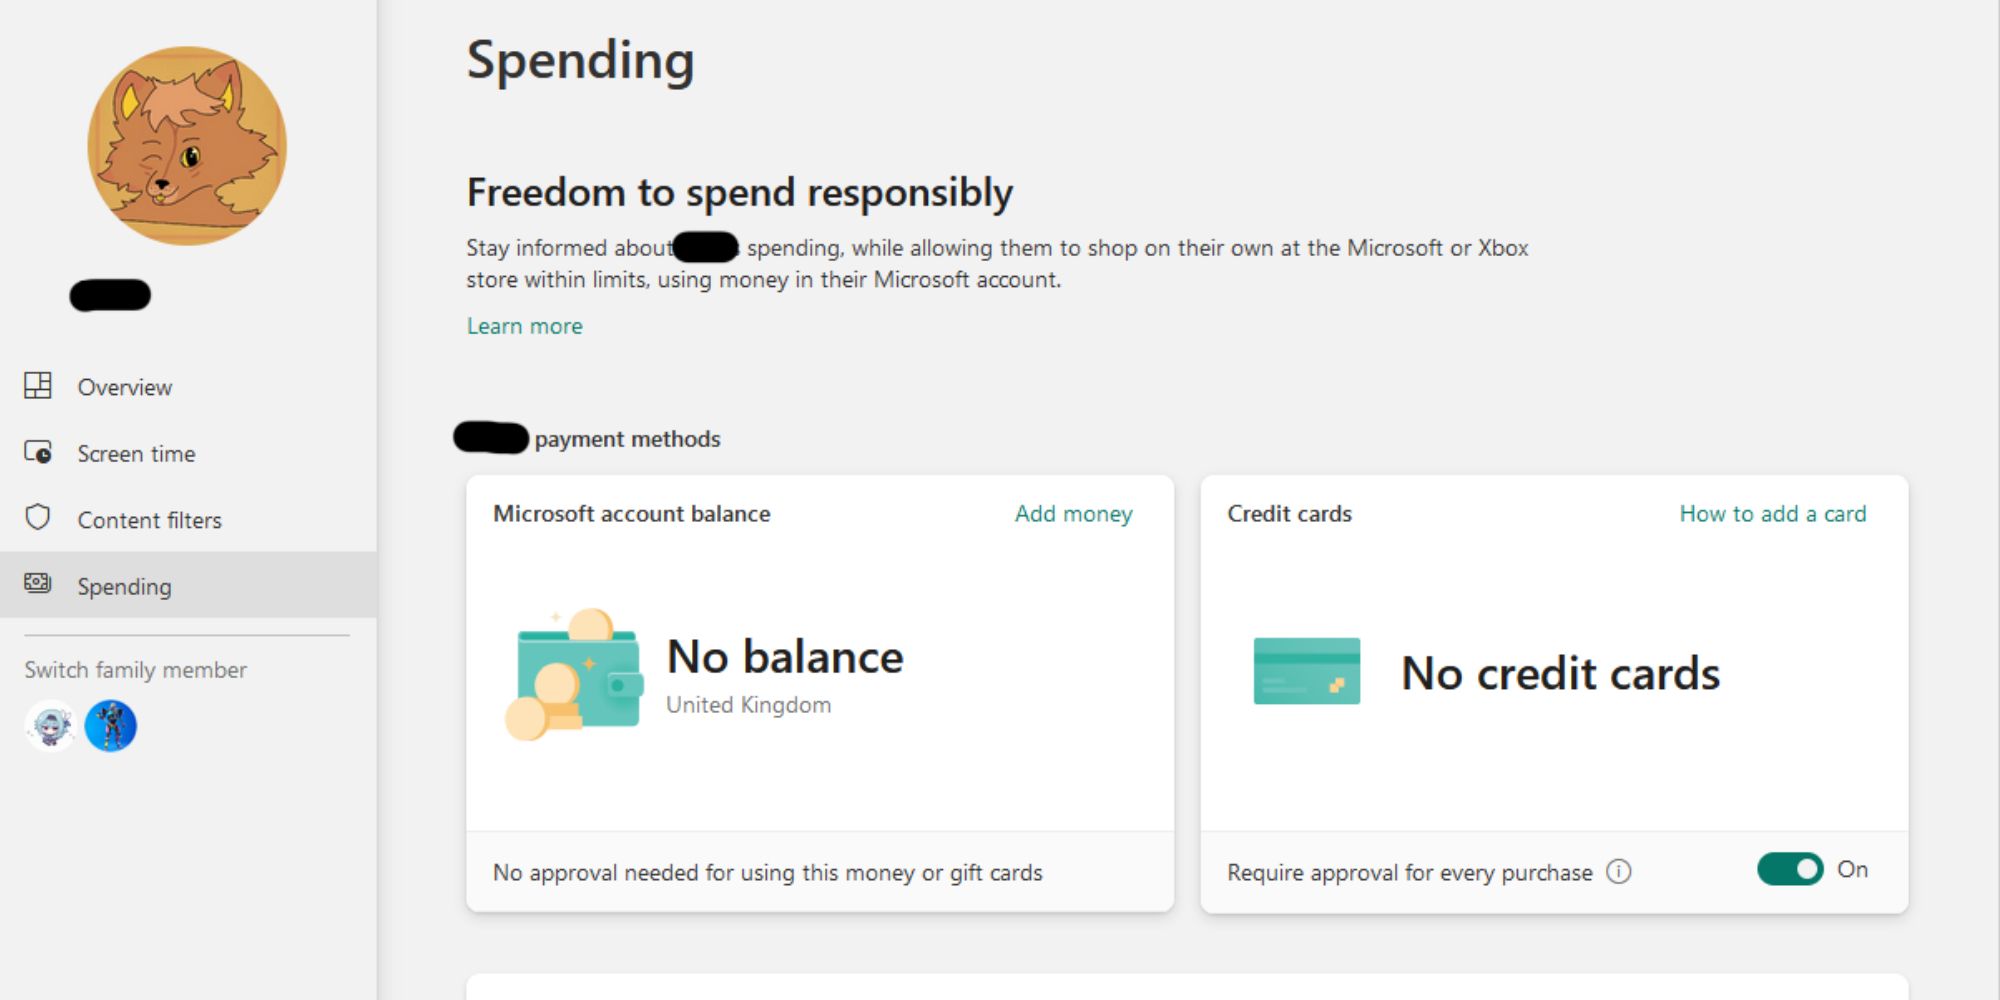 Spending settings on MS website